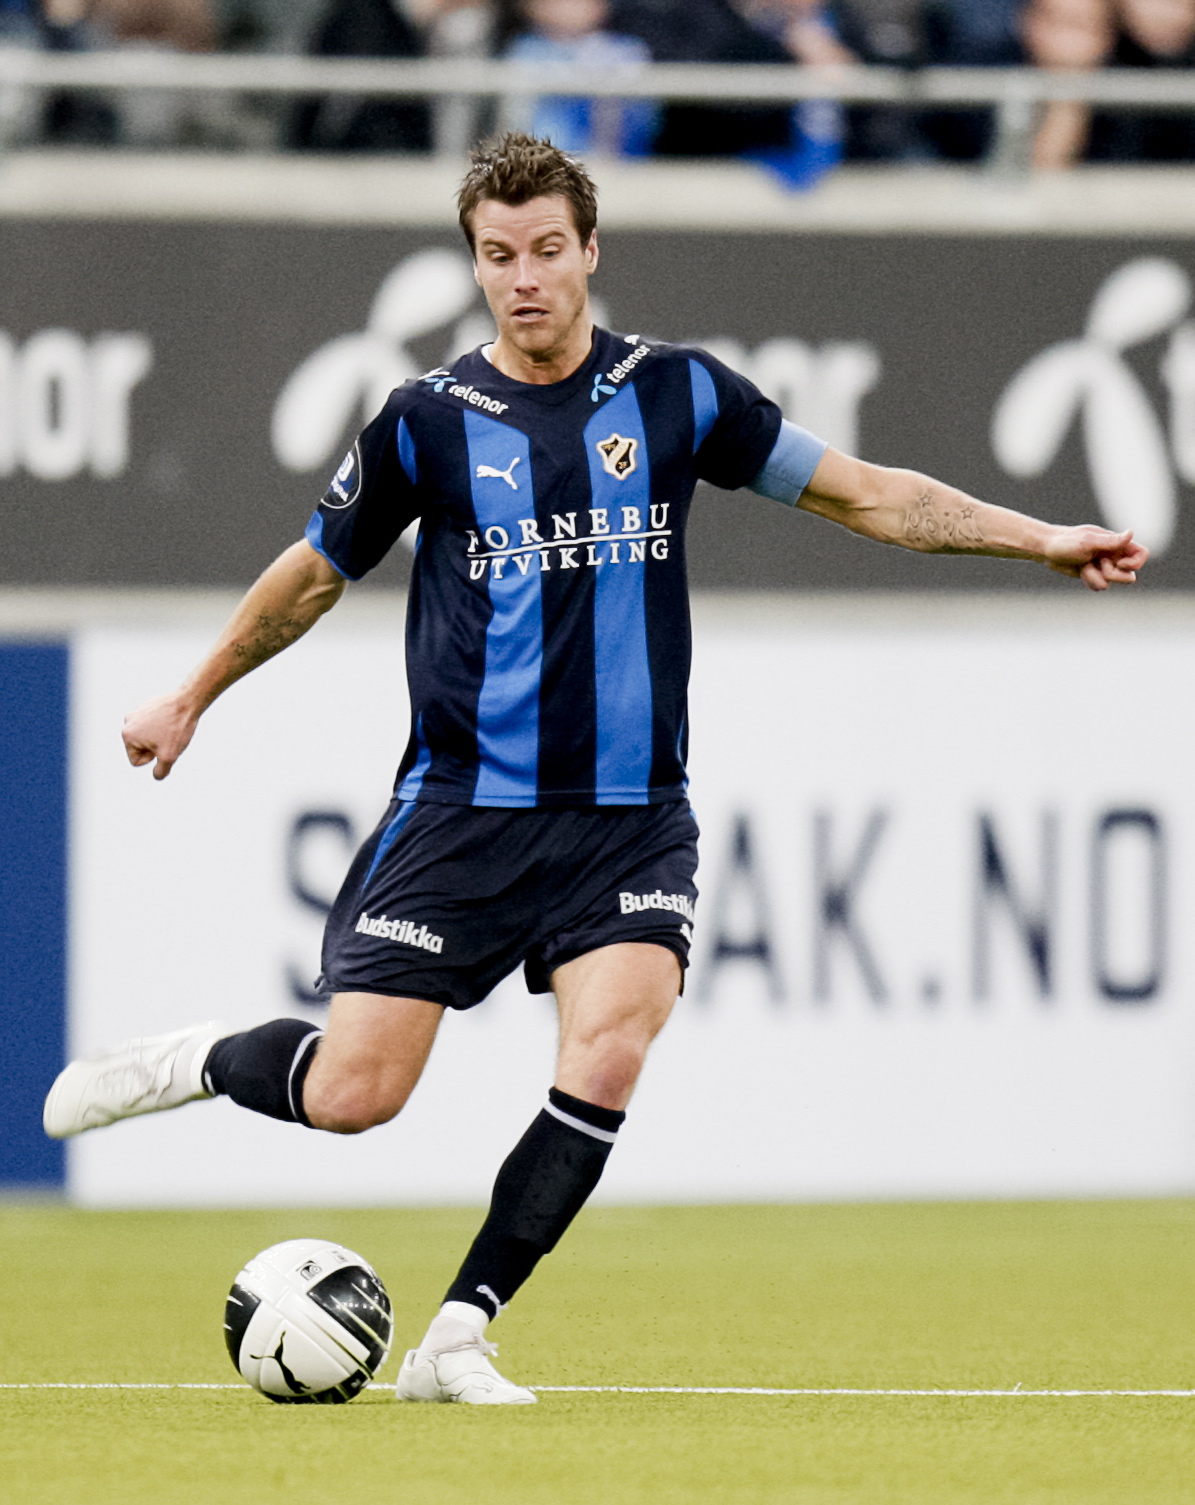 Pontus Farnerud är klar för IFK Göteborg enligt Fotbollskanalen.se.